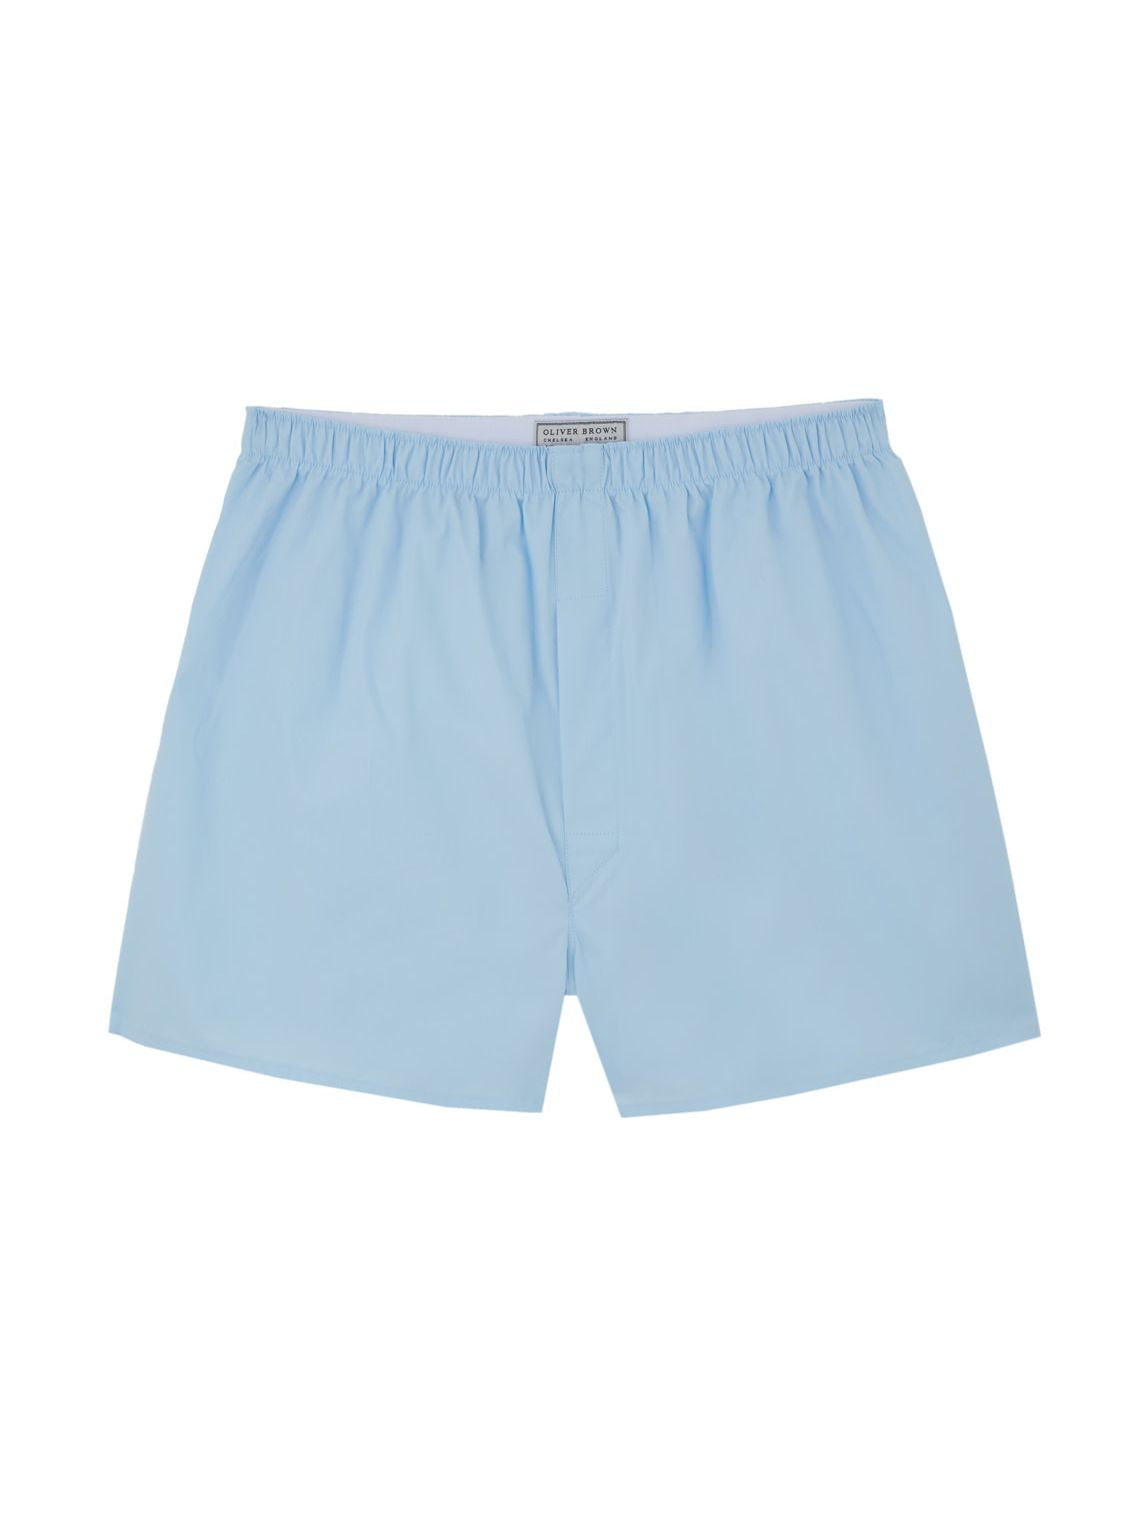 Cotton Boxer Shorts, Plain - Pale Blue